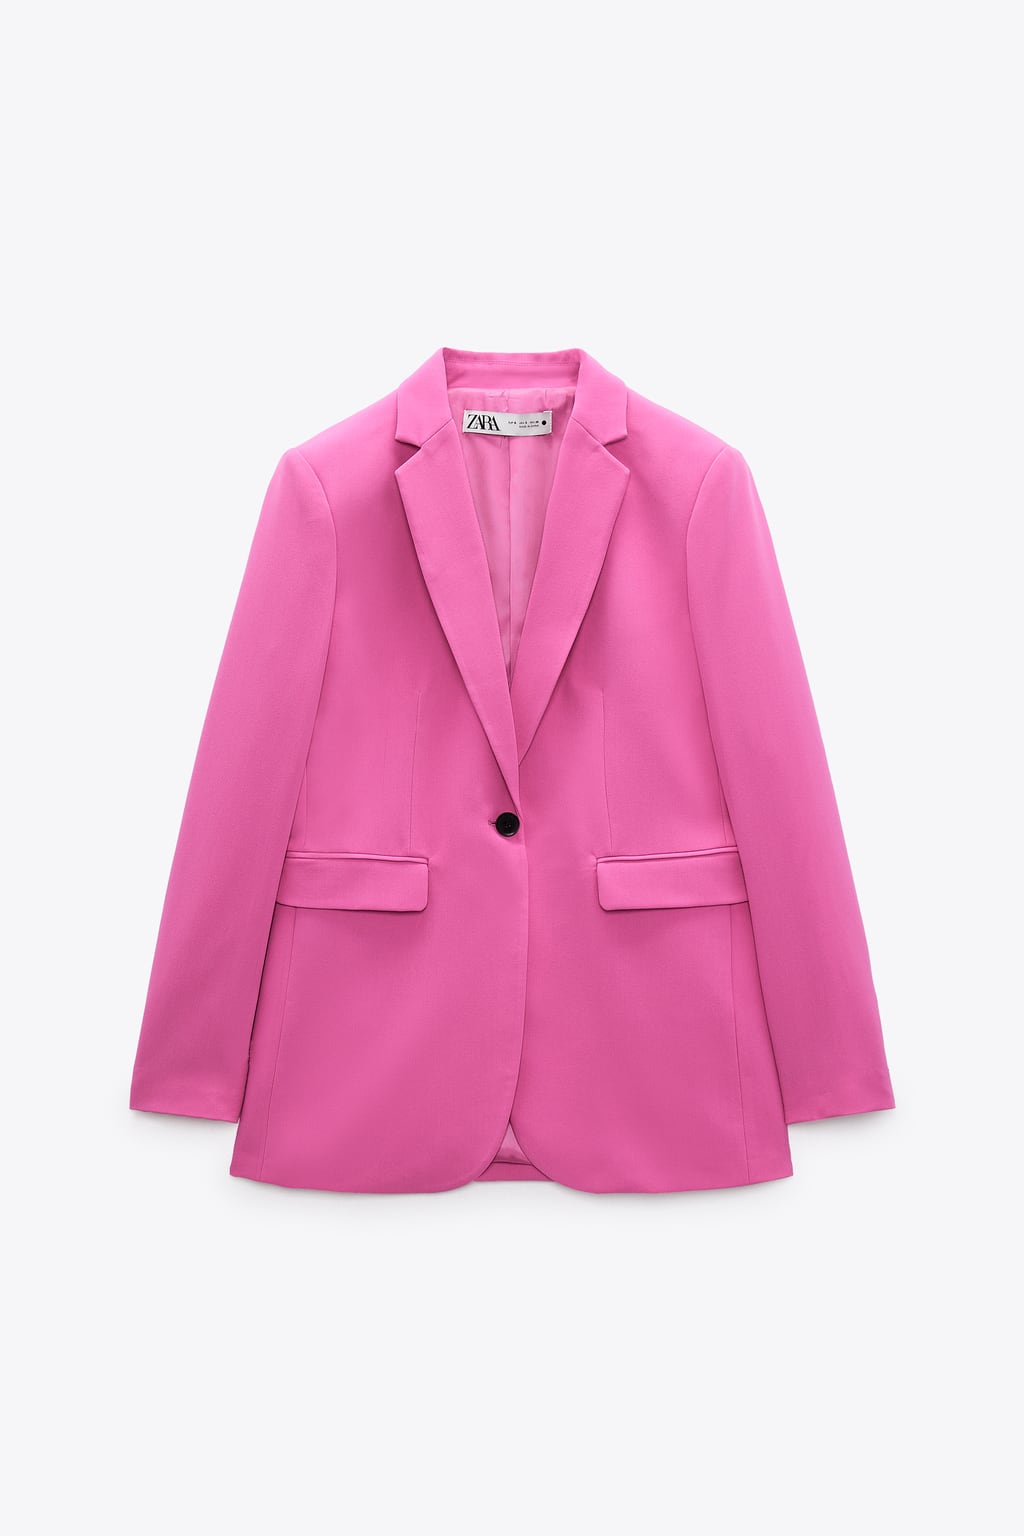 Victoria de Suecia apuesta por Zara con un traje rosa que sigue disponible